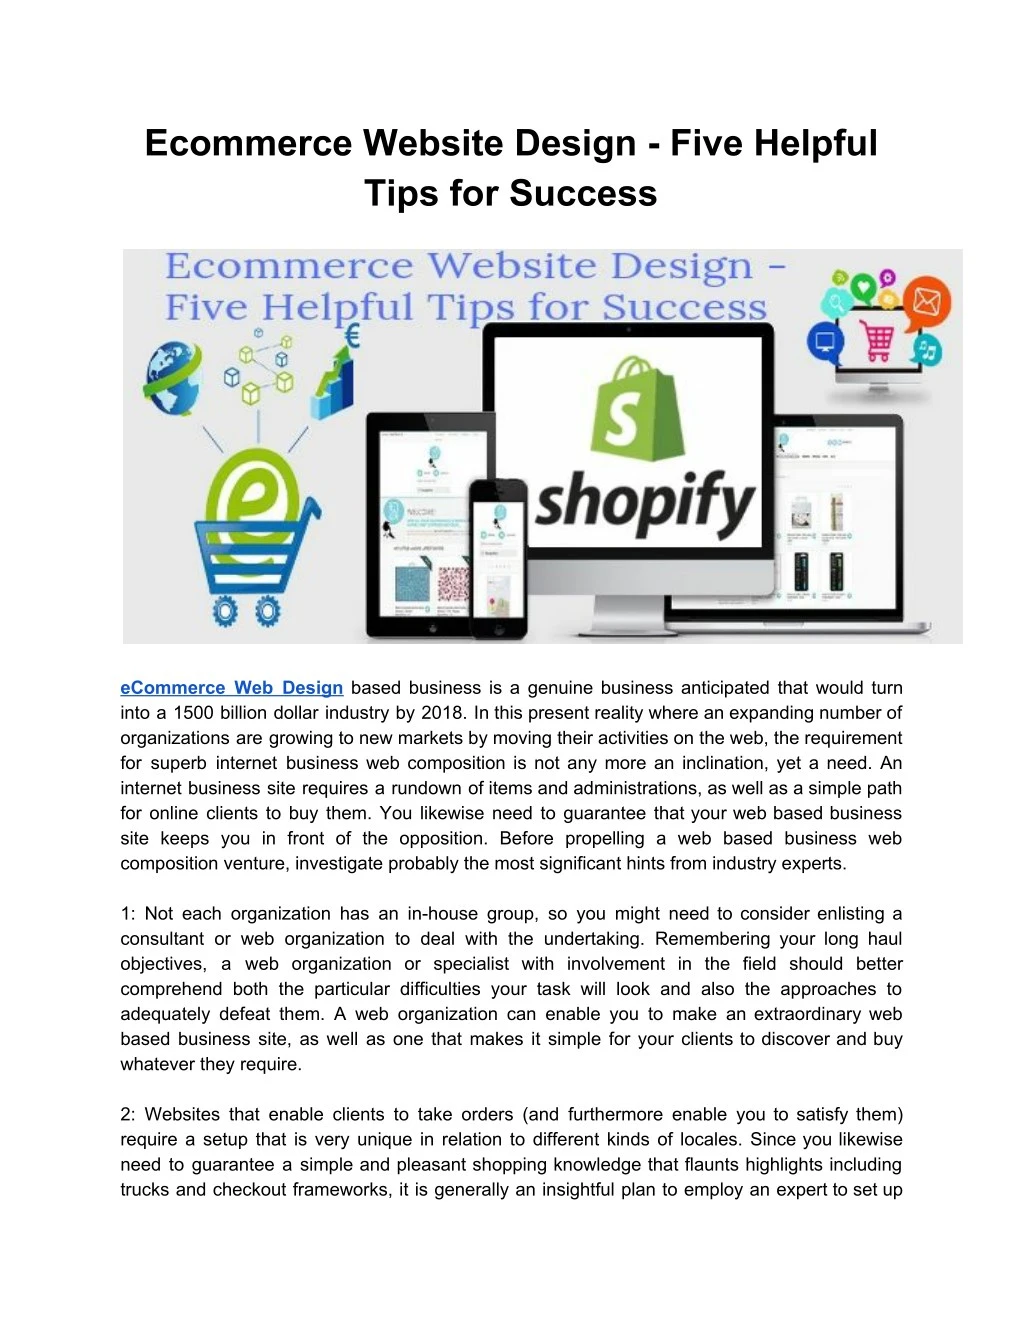 ecommerce website design five helpful tips